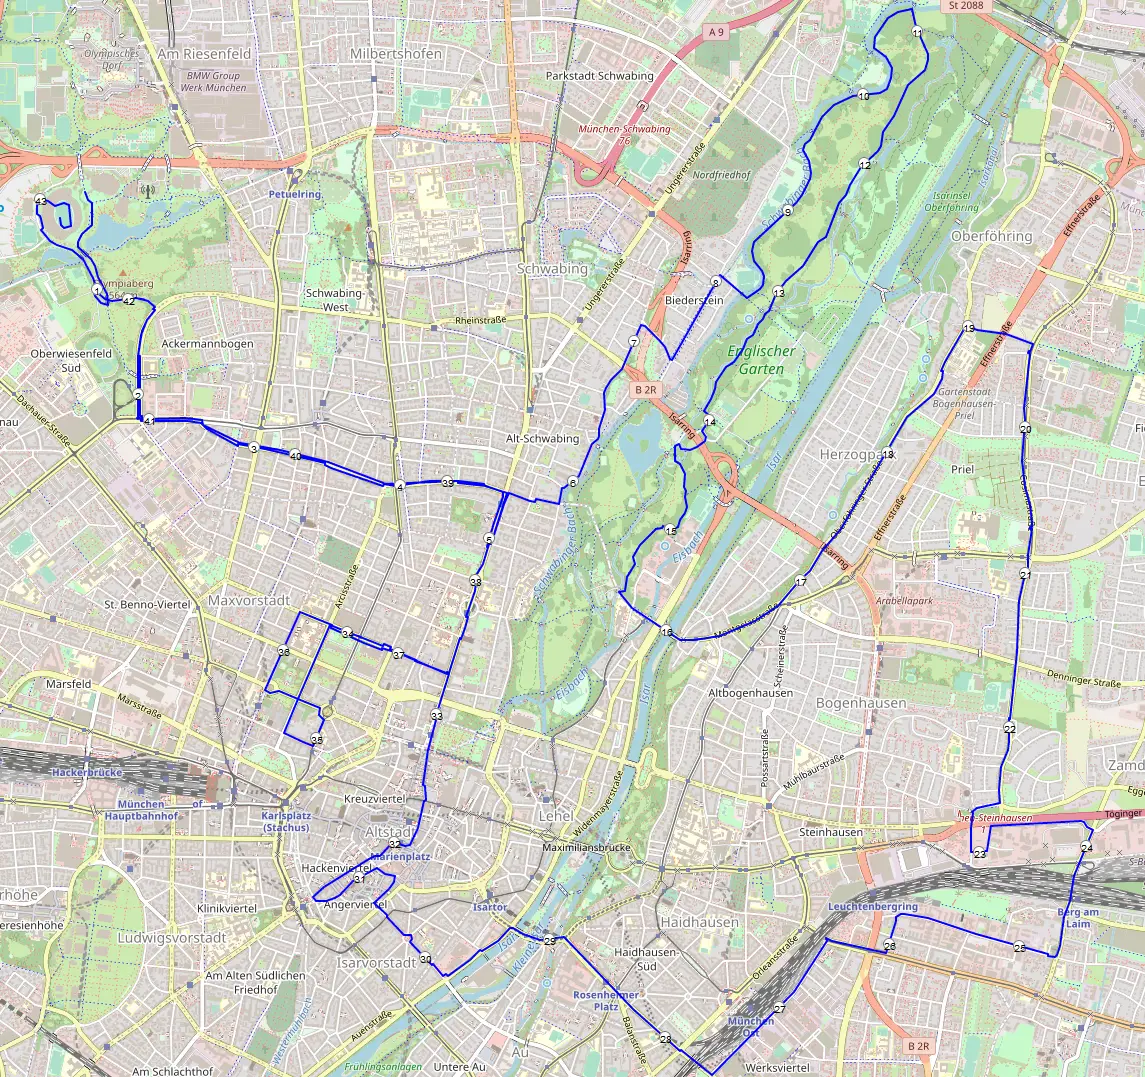 Munich marathon route